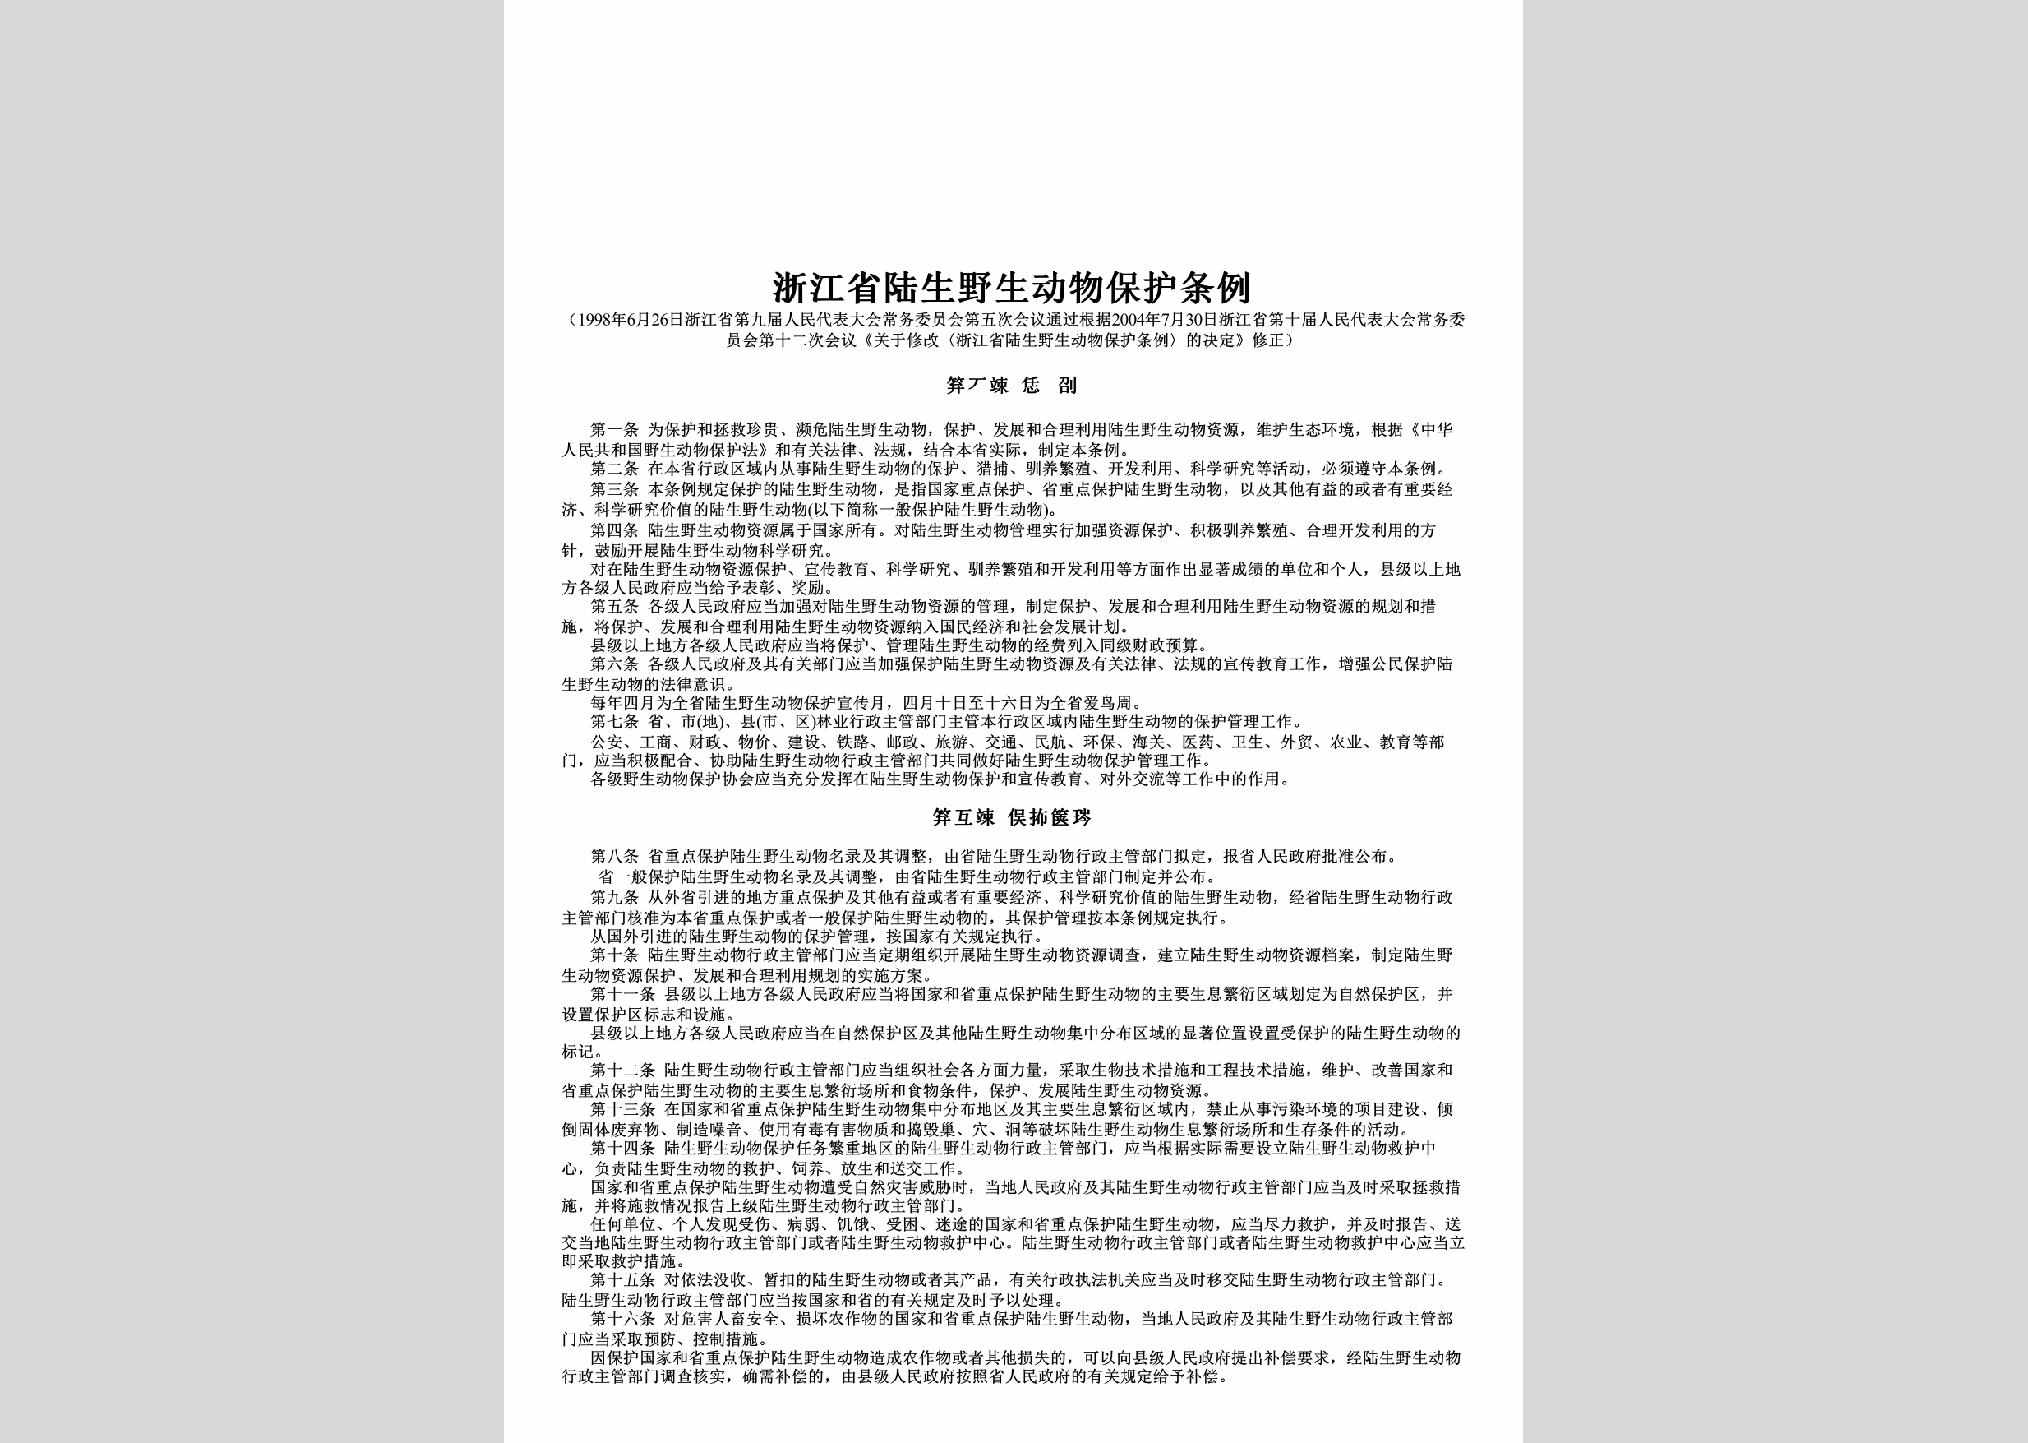 ZJ-LSYSDWBH-2004：浙江省陆生野生动物保护条例